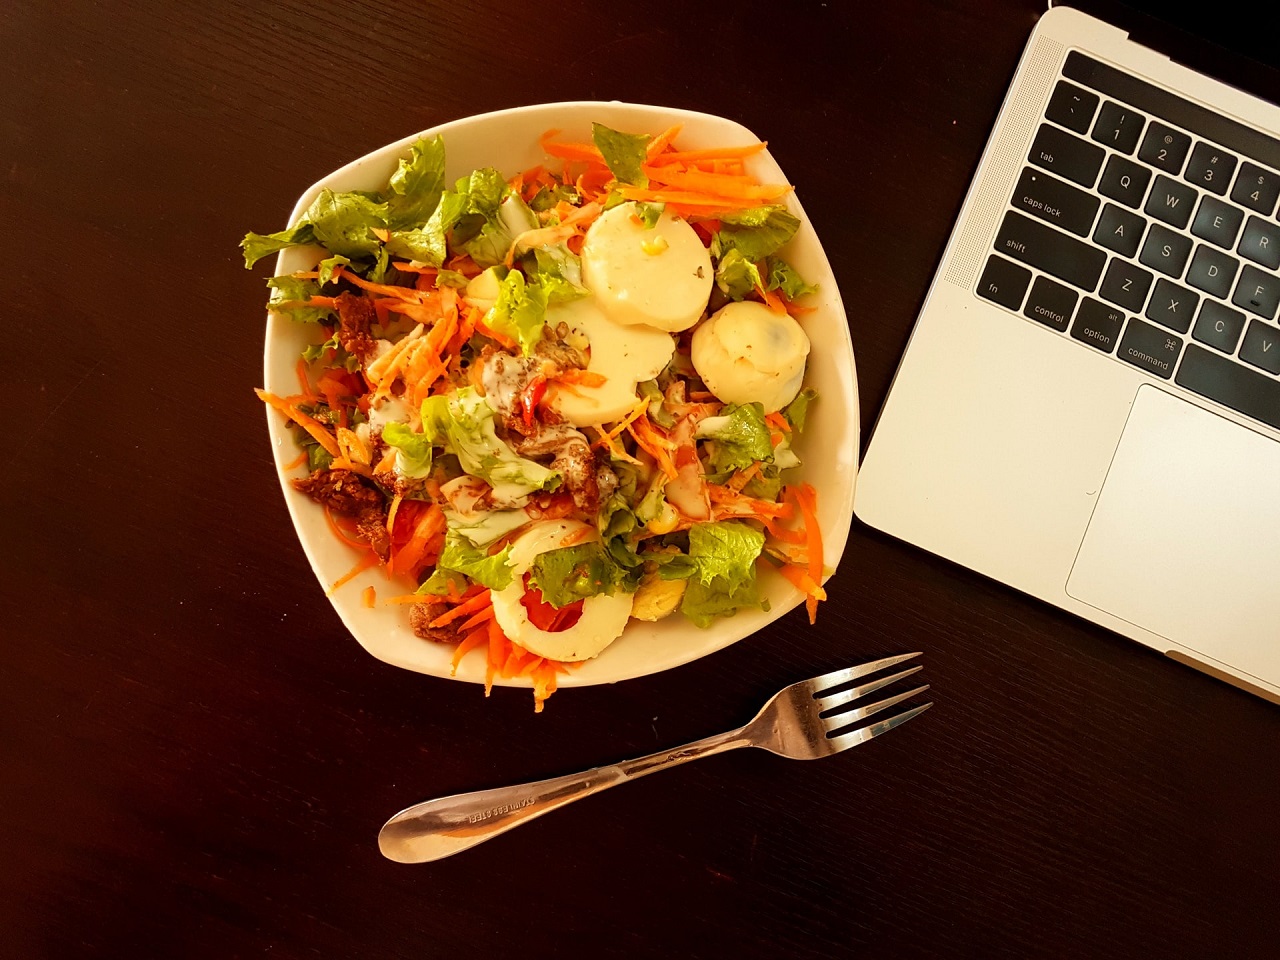 Jak w pracy jeść regularnie posiłki?